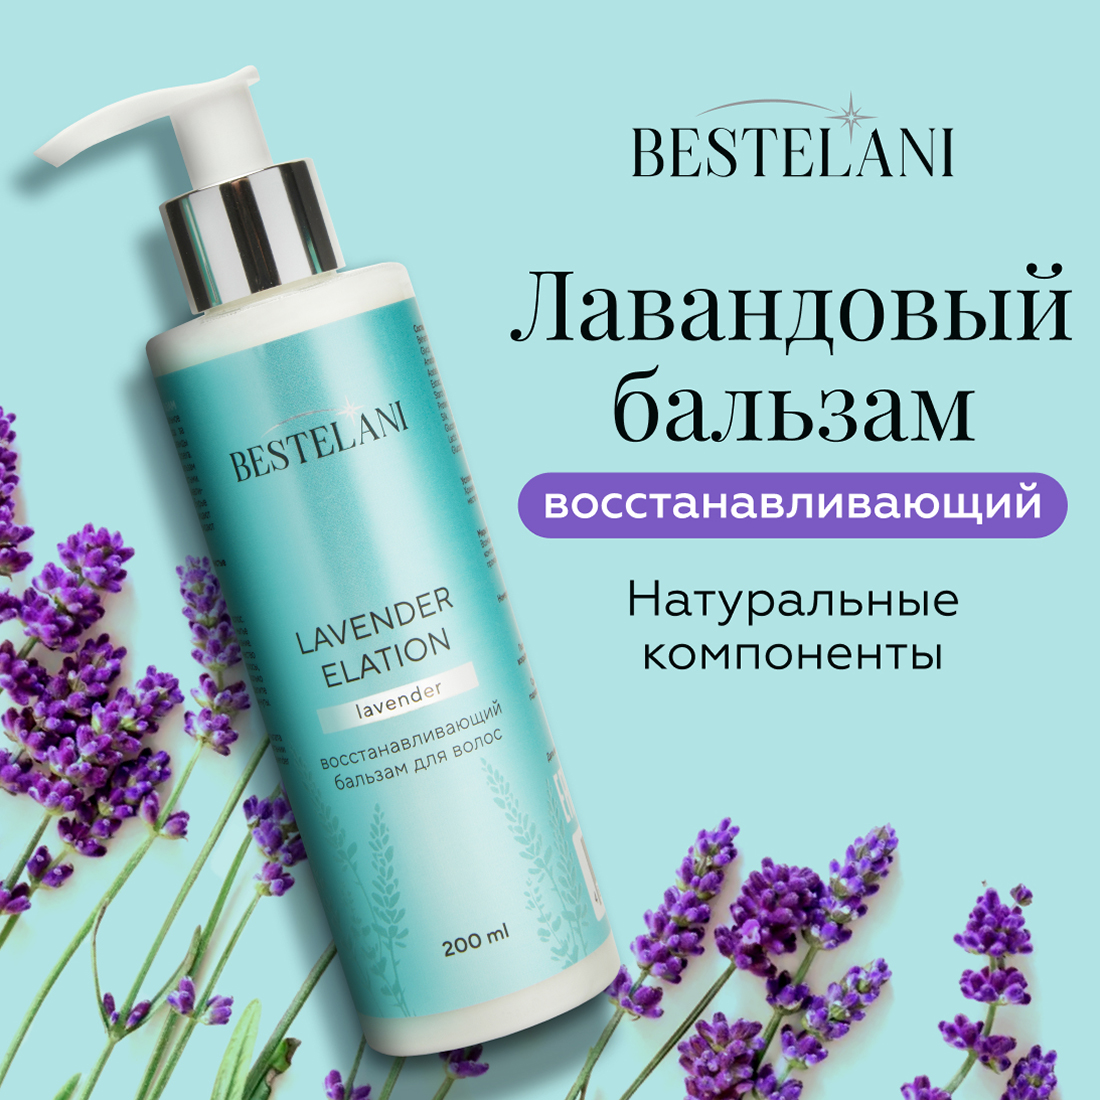 Восстанавливающий бальзам для волос Bestelani Lavender elation 200 мл бальзам grace с лавандой питательный skin nourishing balm lavender 20 г